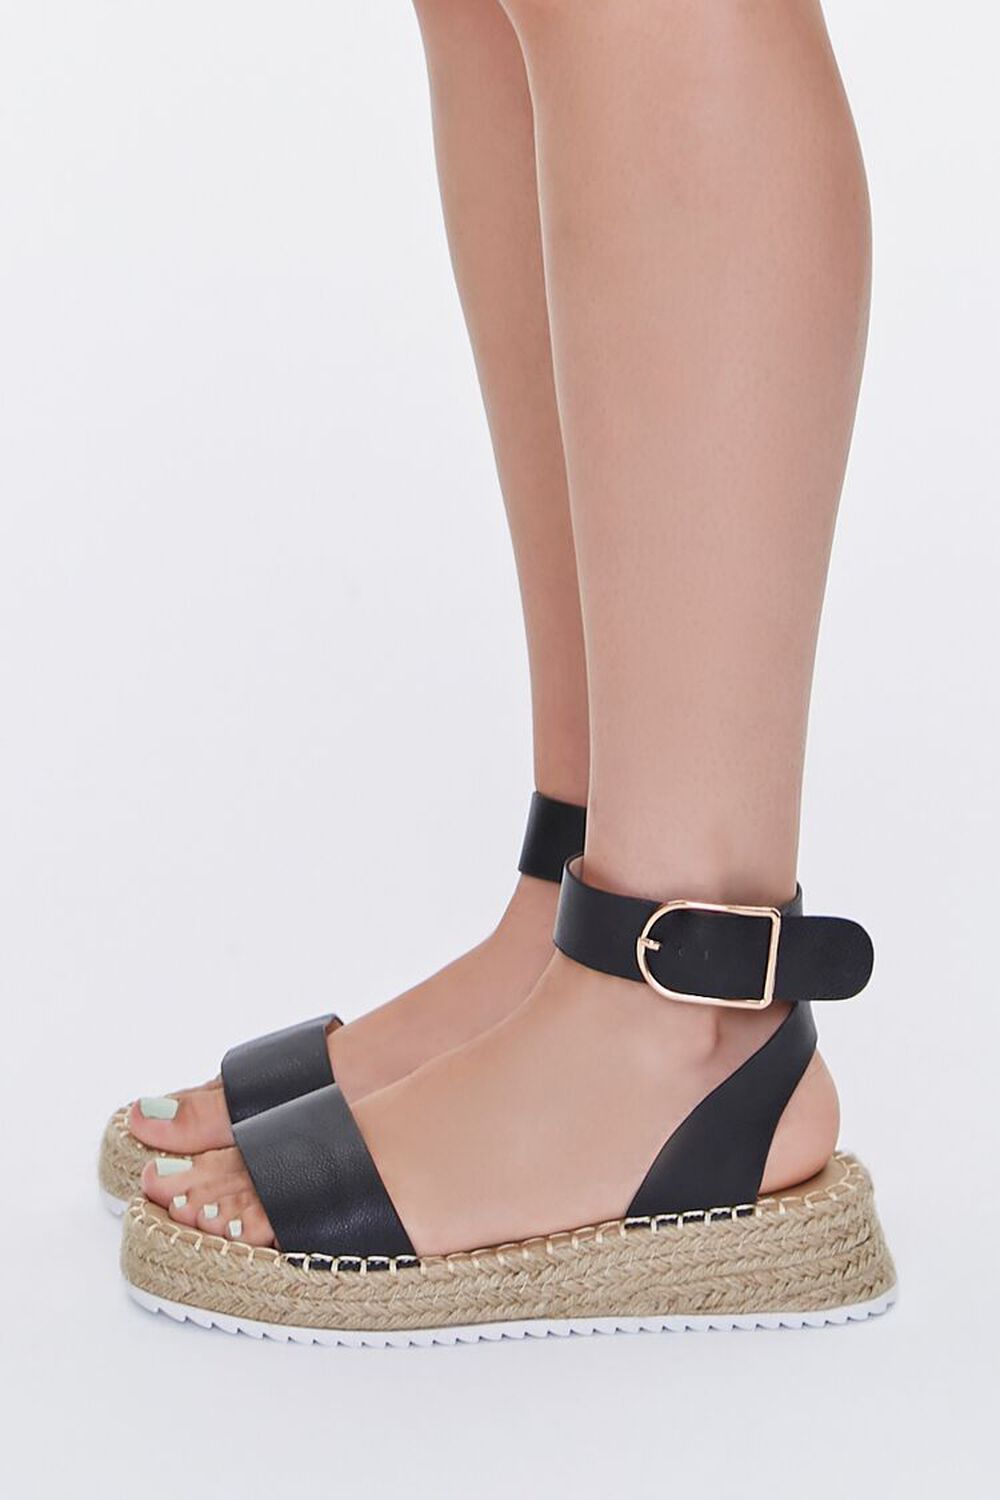 BLACK Espadrille Flatform Sandals, image 2